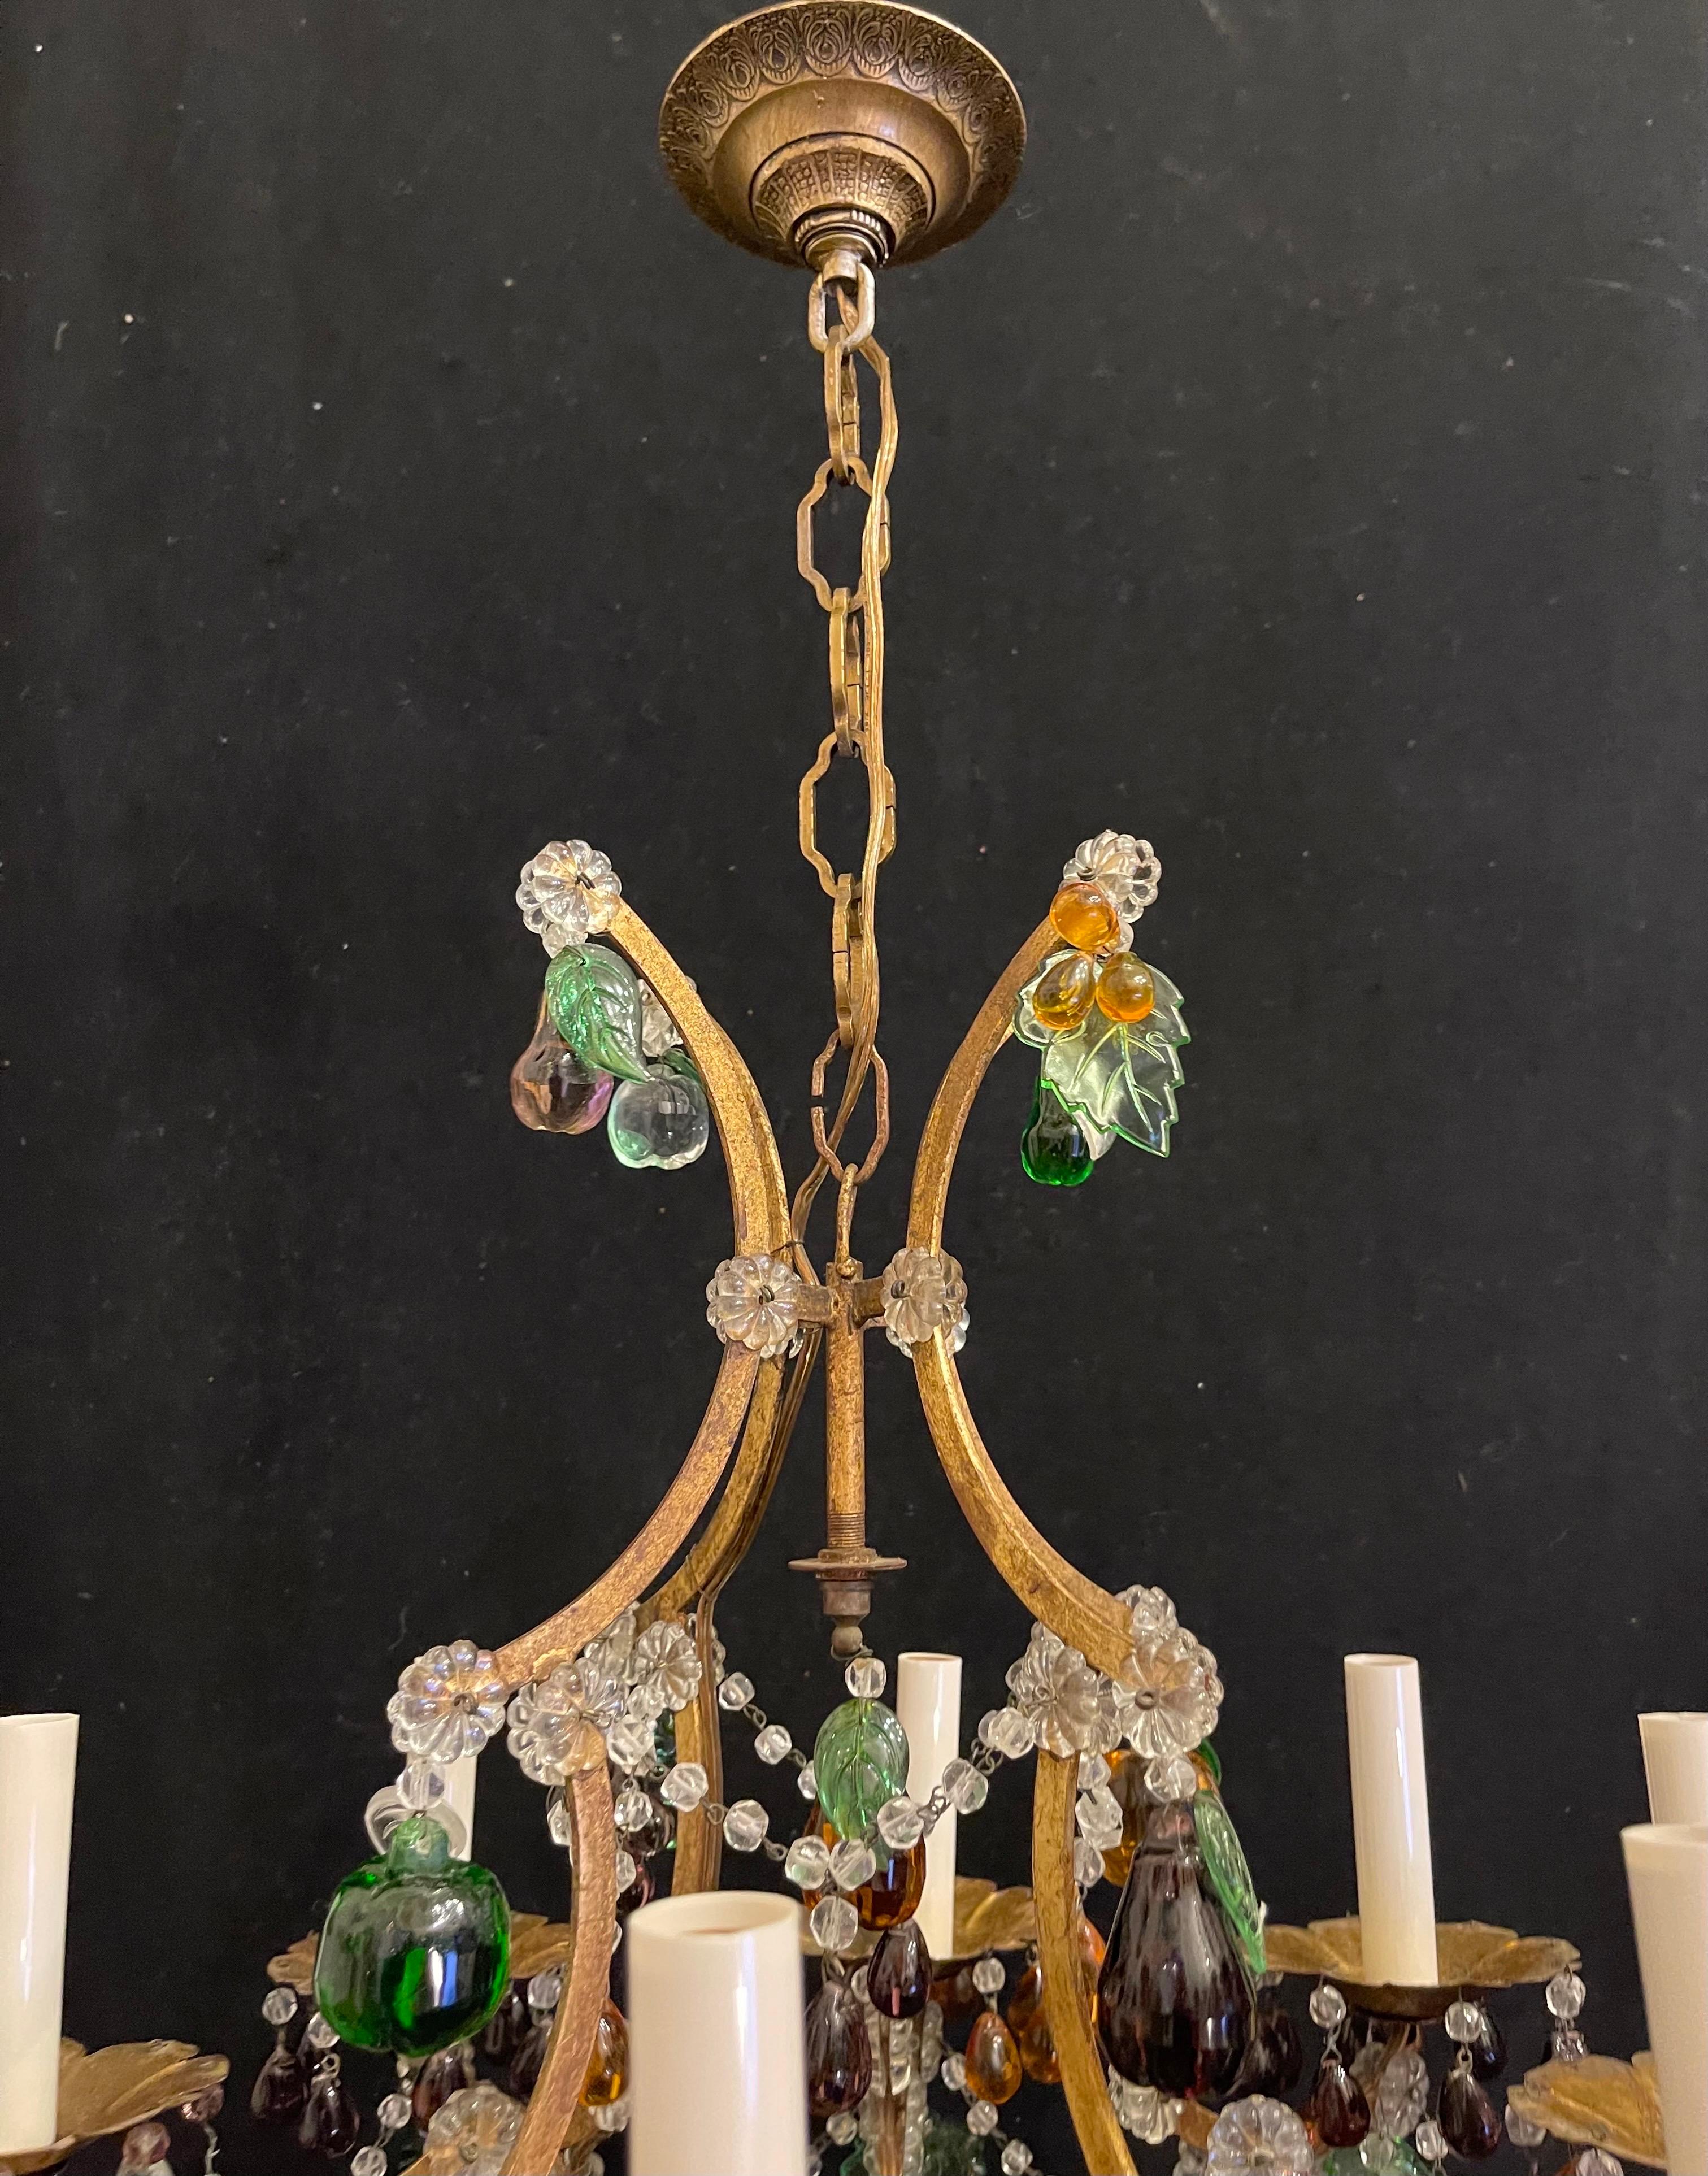 Magnifique fruit d'art italien des années 1950 en fer doré et cristal de Murano.  lustre décoré à 8 candélabres.
Ce magnifique lustre se compose d'une cage à oiseaux en fer doré gracieusement chantournée et d'un assortiment de fruits en verre coloré